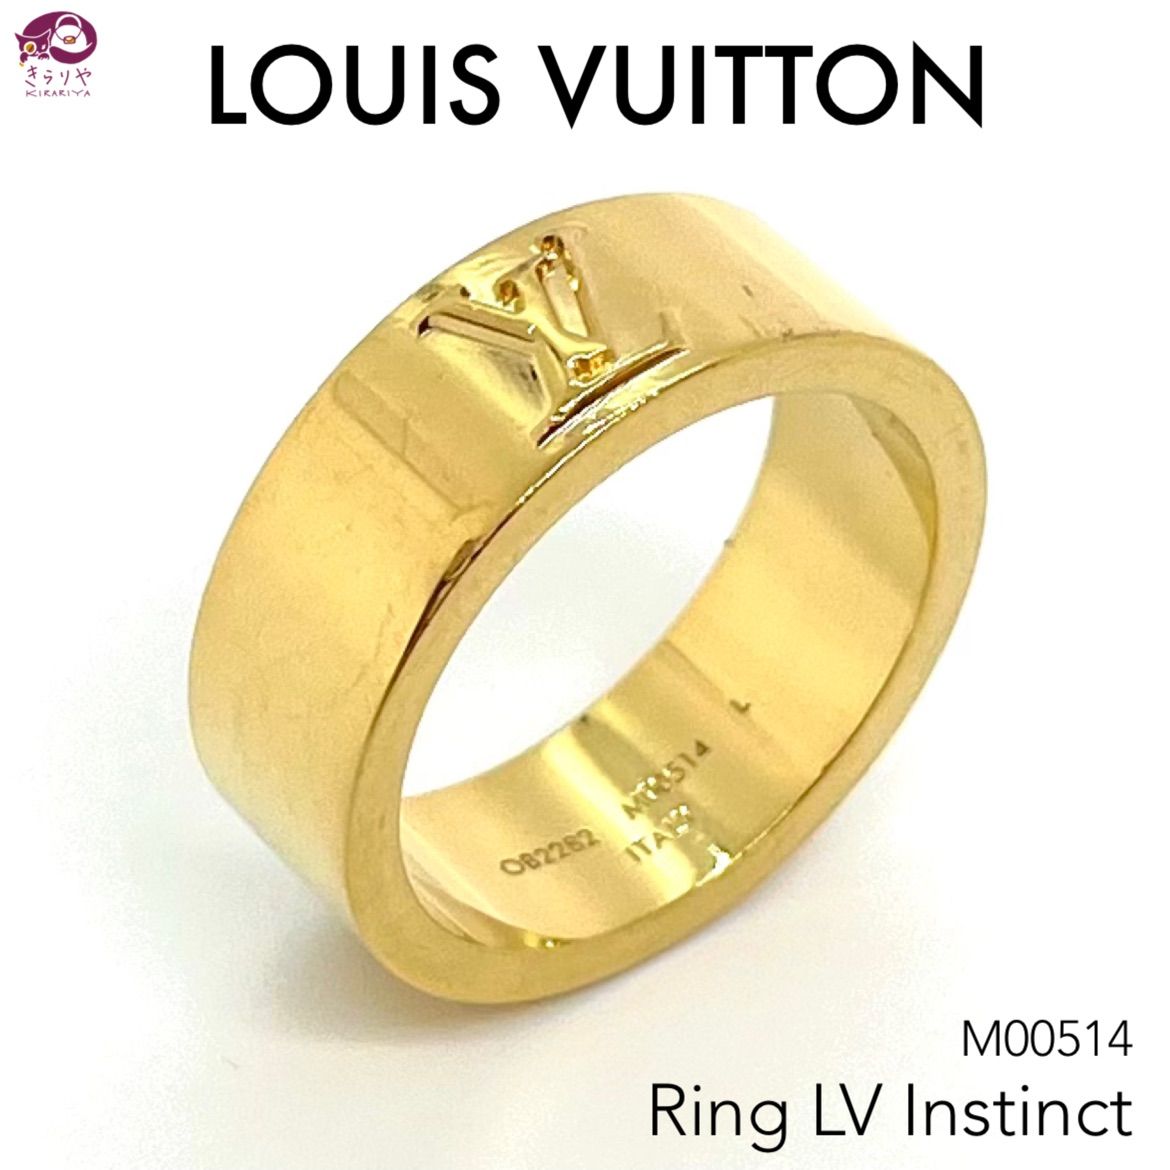 Shop Louis Vuitton Lv Instinct Set Of 2 Rings (M00514) by Alliciant